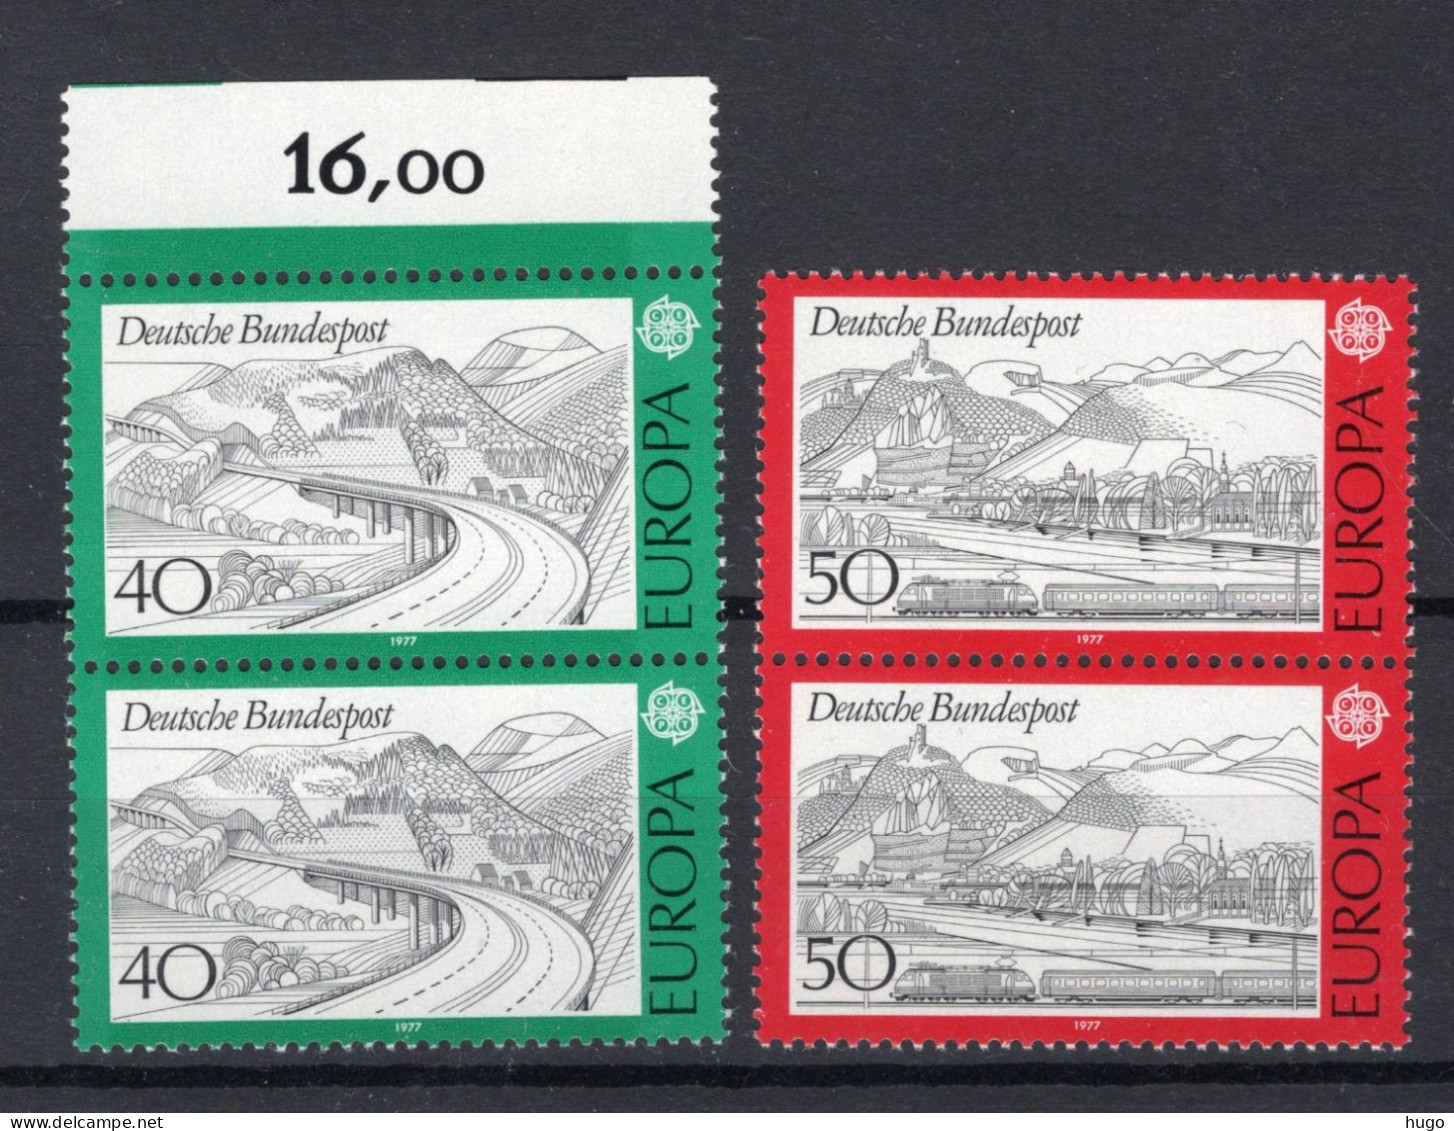 (B) Duitsland CEPT 934/935 (2 St) MNH - 1977 - 1977